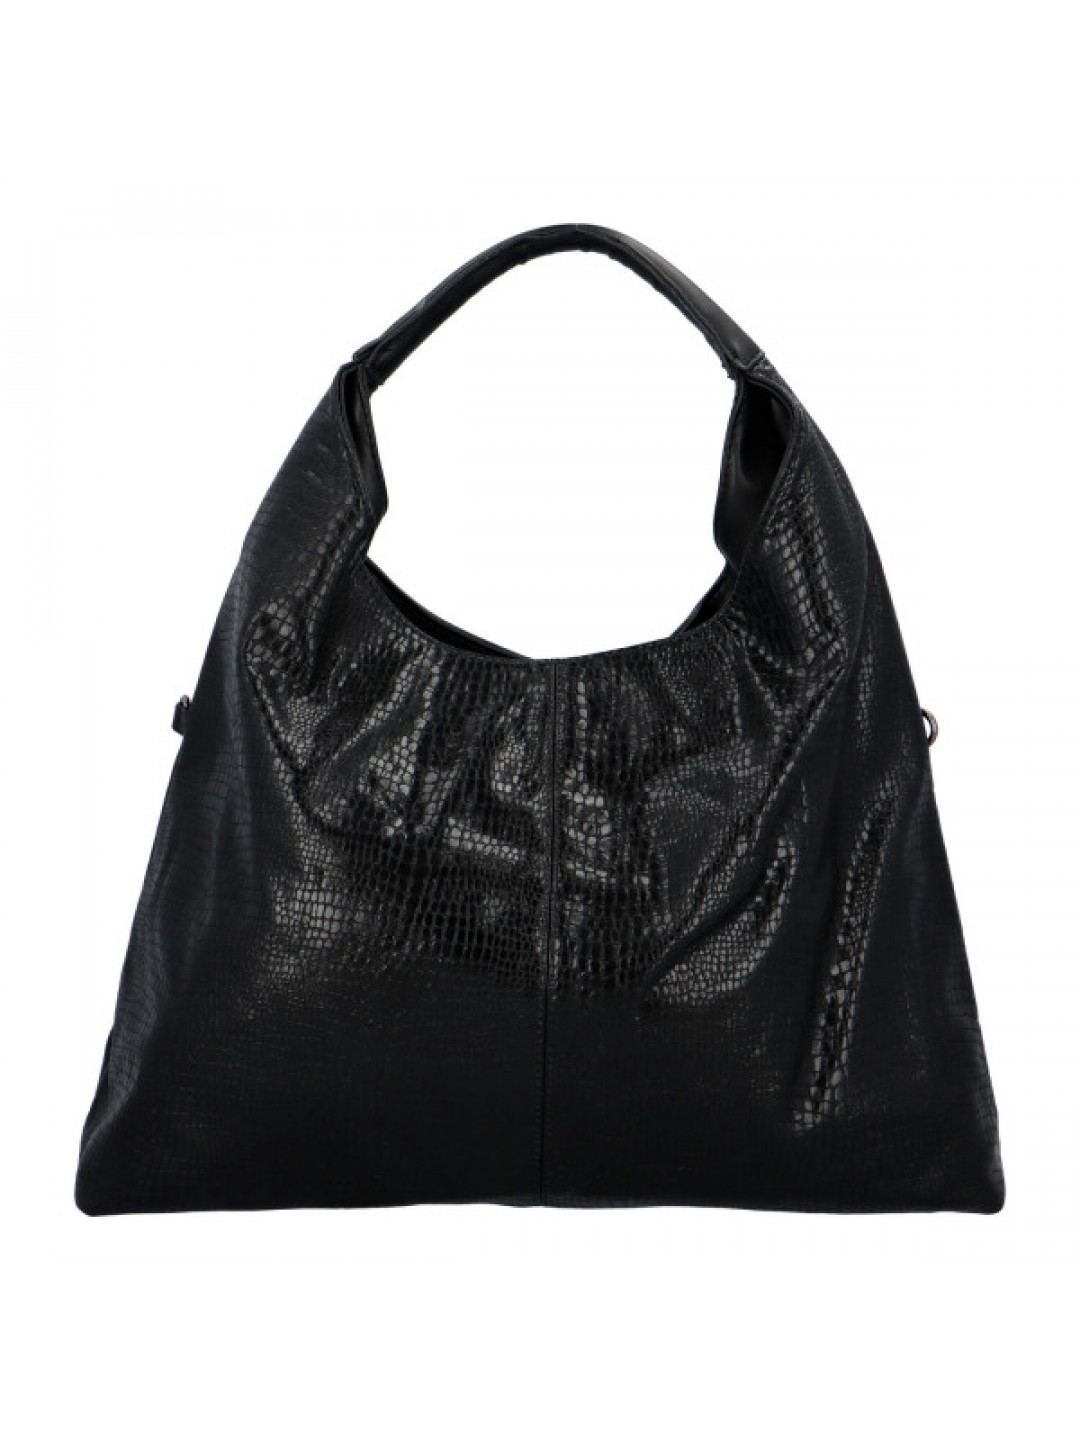 Dámská kabelka na rameno černá – Paolo bags Imelda